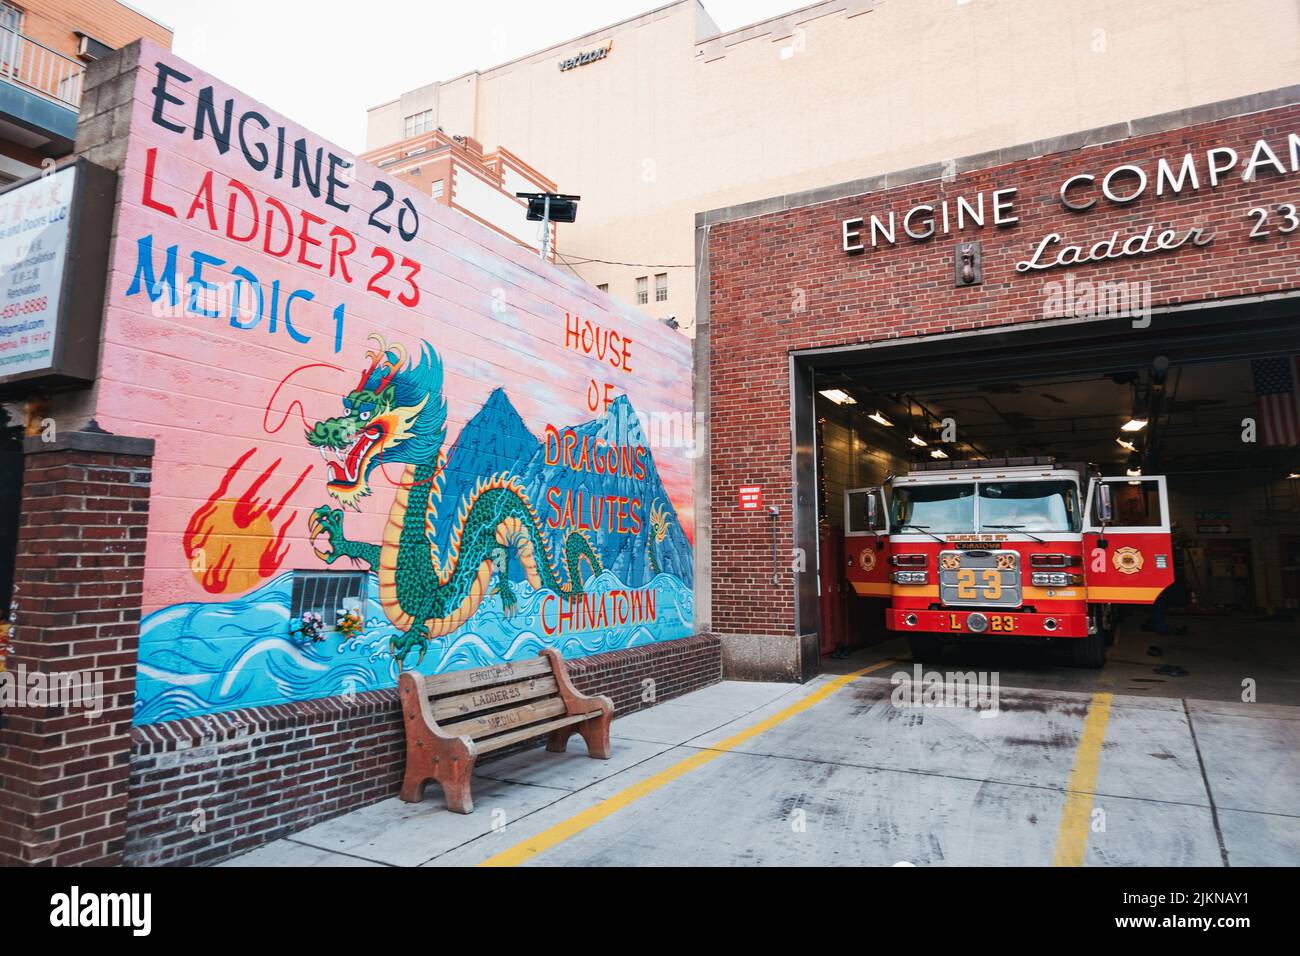 Camion de pompiers Ladder 23 à l'intérieur de la gare Chinatown du service des incendies de Philadelphie, rempli d'un dragon d'art de rue Banque D'Images